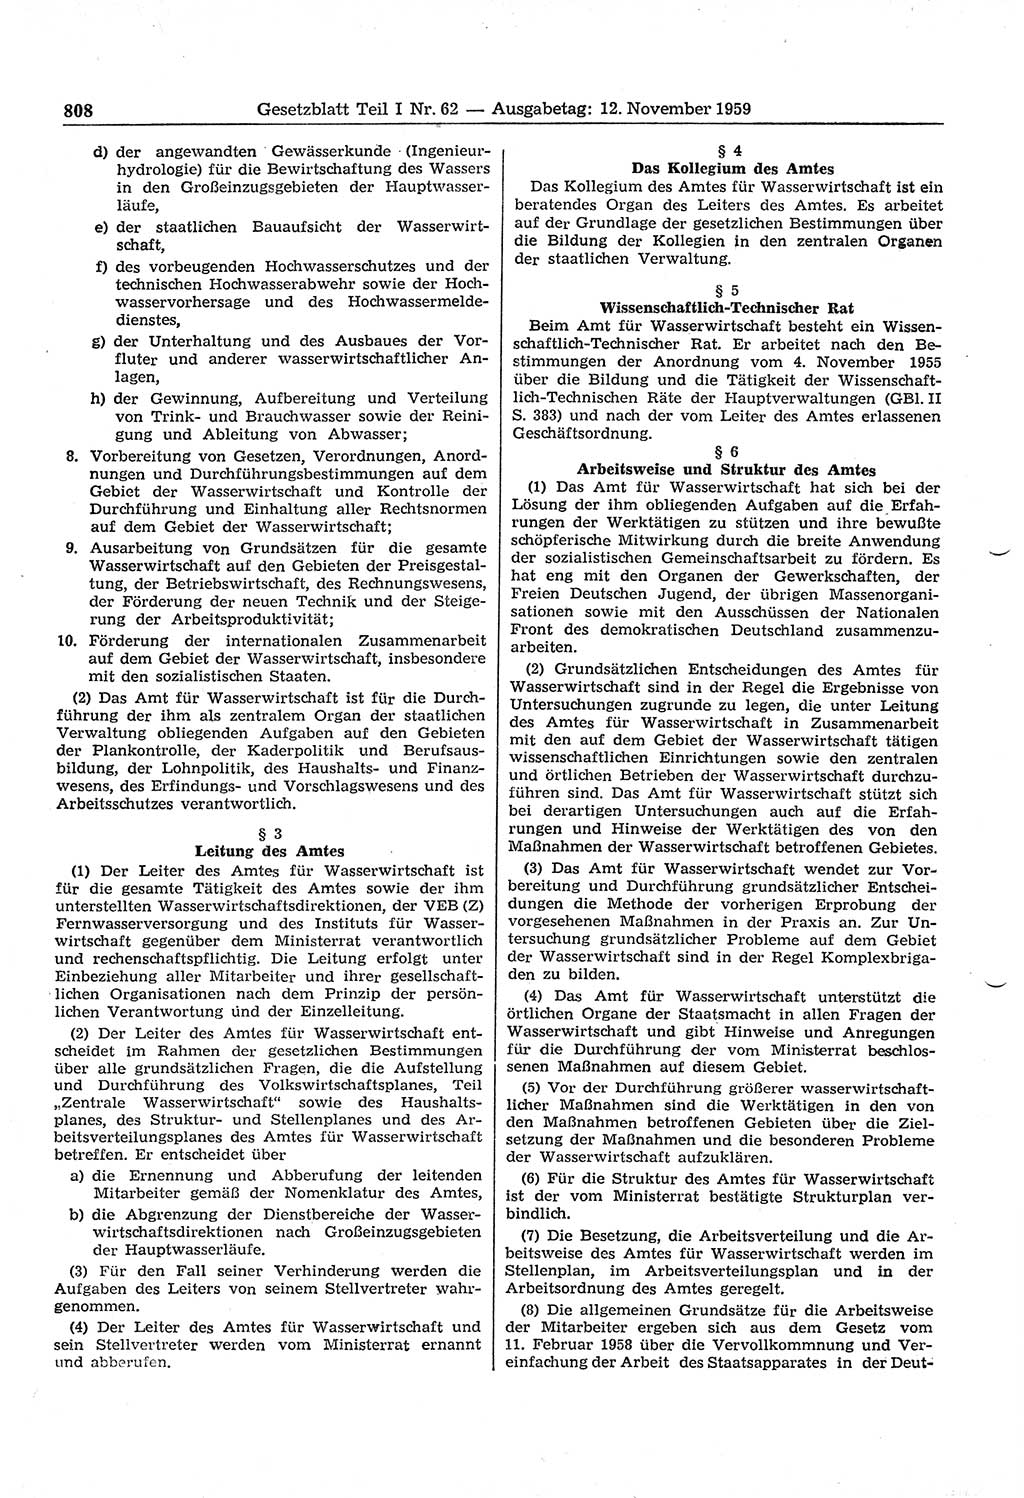 Gesetzblatt (GBl.) der Deutschen Demokratischen Republik (DDR) Teil Ⅰ 1959, Seite 808 (GBl. DDR Ⅰ 1959, S. 808)